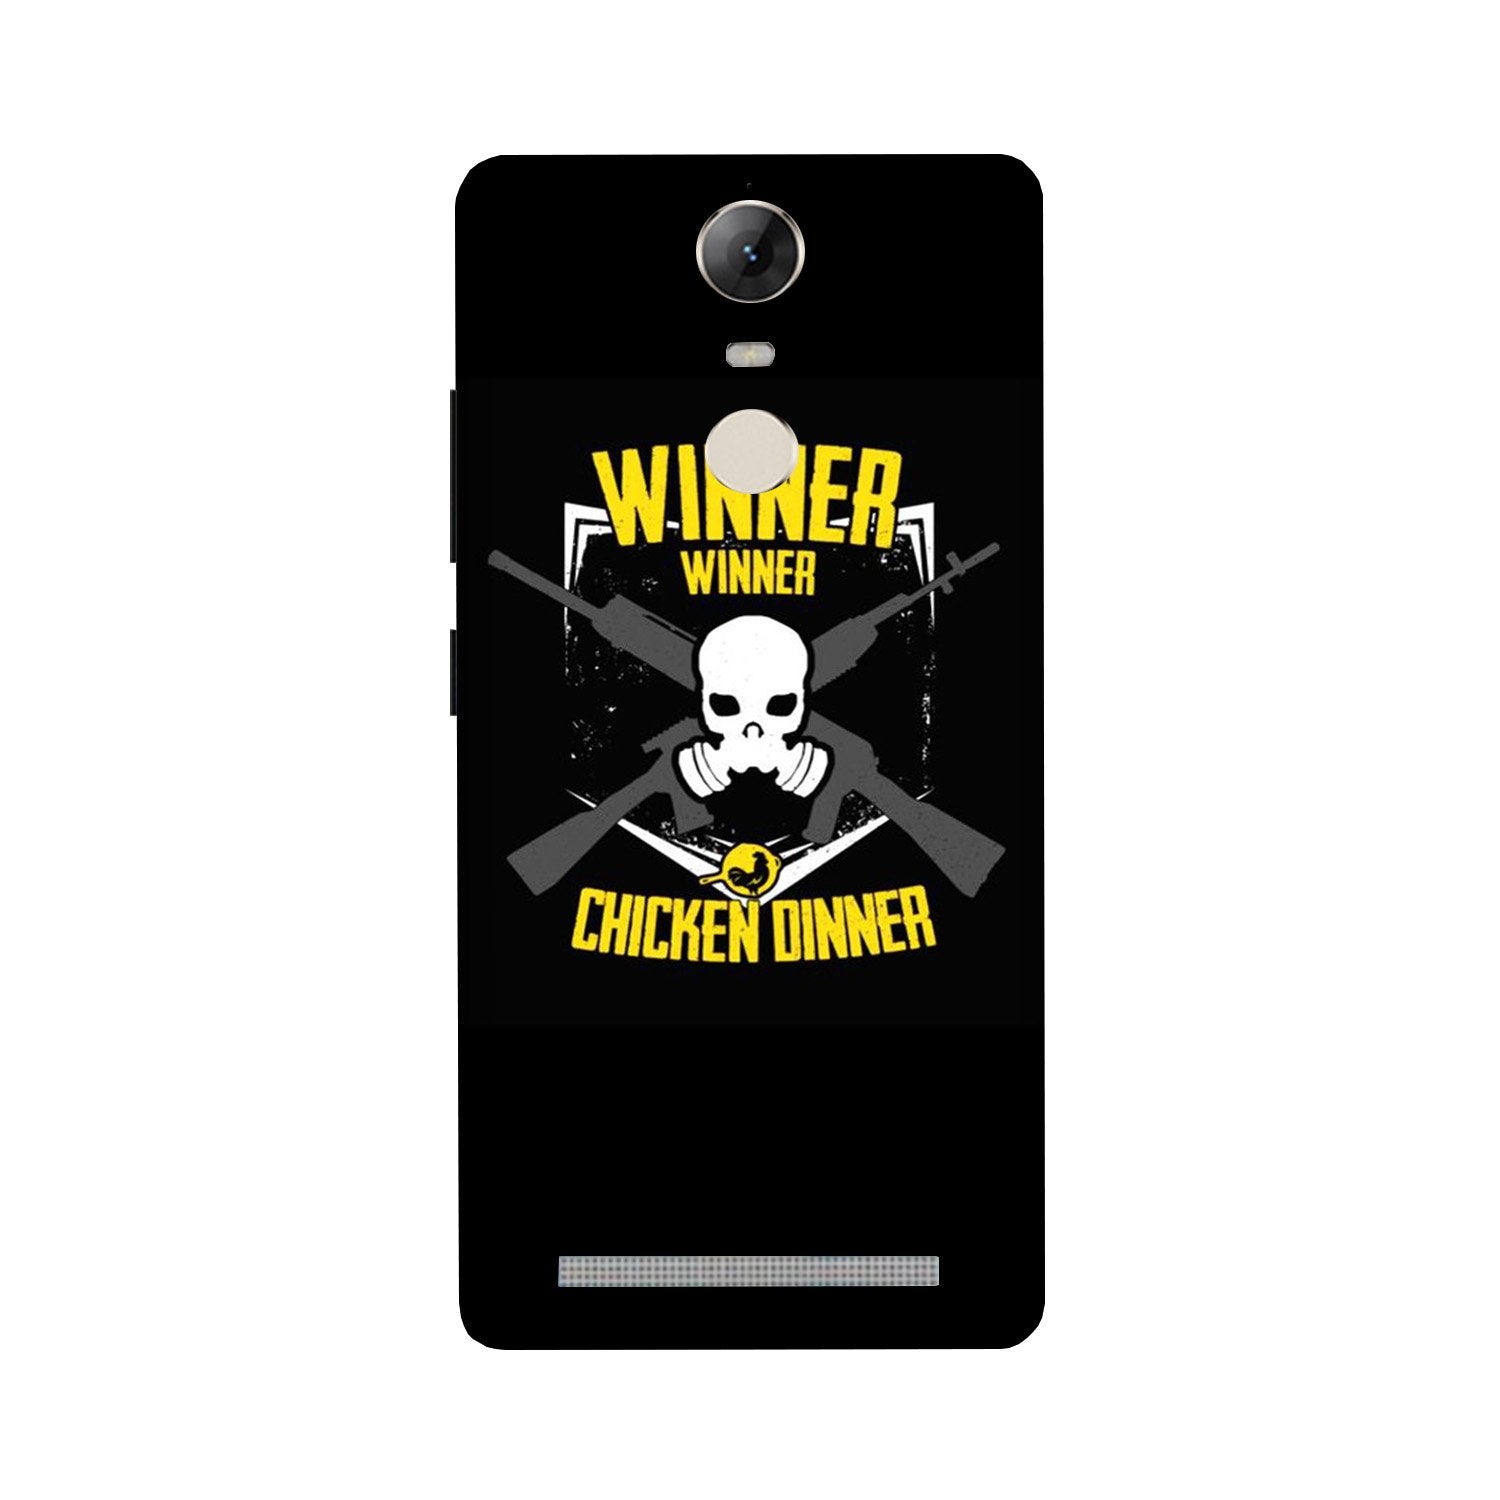 Winner Winner Chicken Dinner Case for Lenovo Vibe K5 Note(Design - 178)